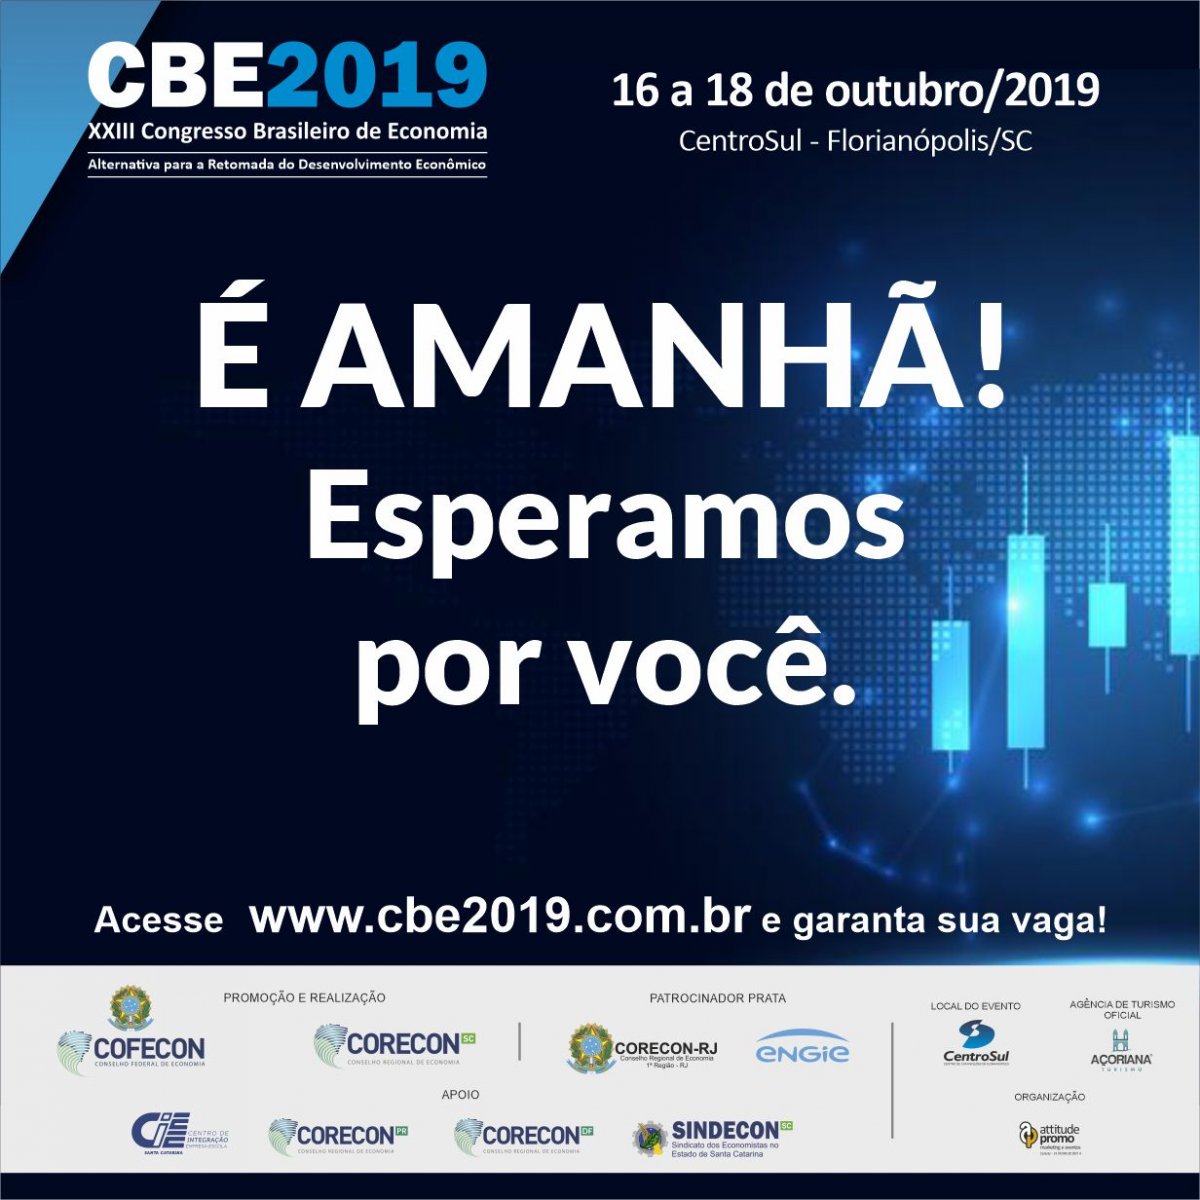 Começa nesta quarta-feira o 23º Congresso Brasileiro de Economia (CBE) - Corecon/SC